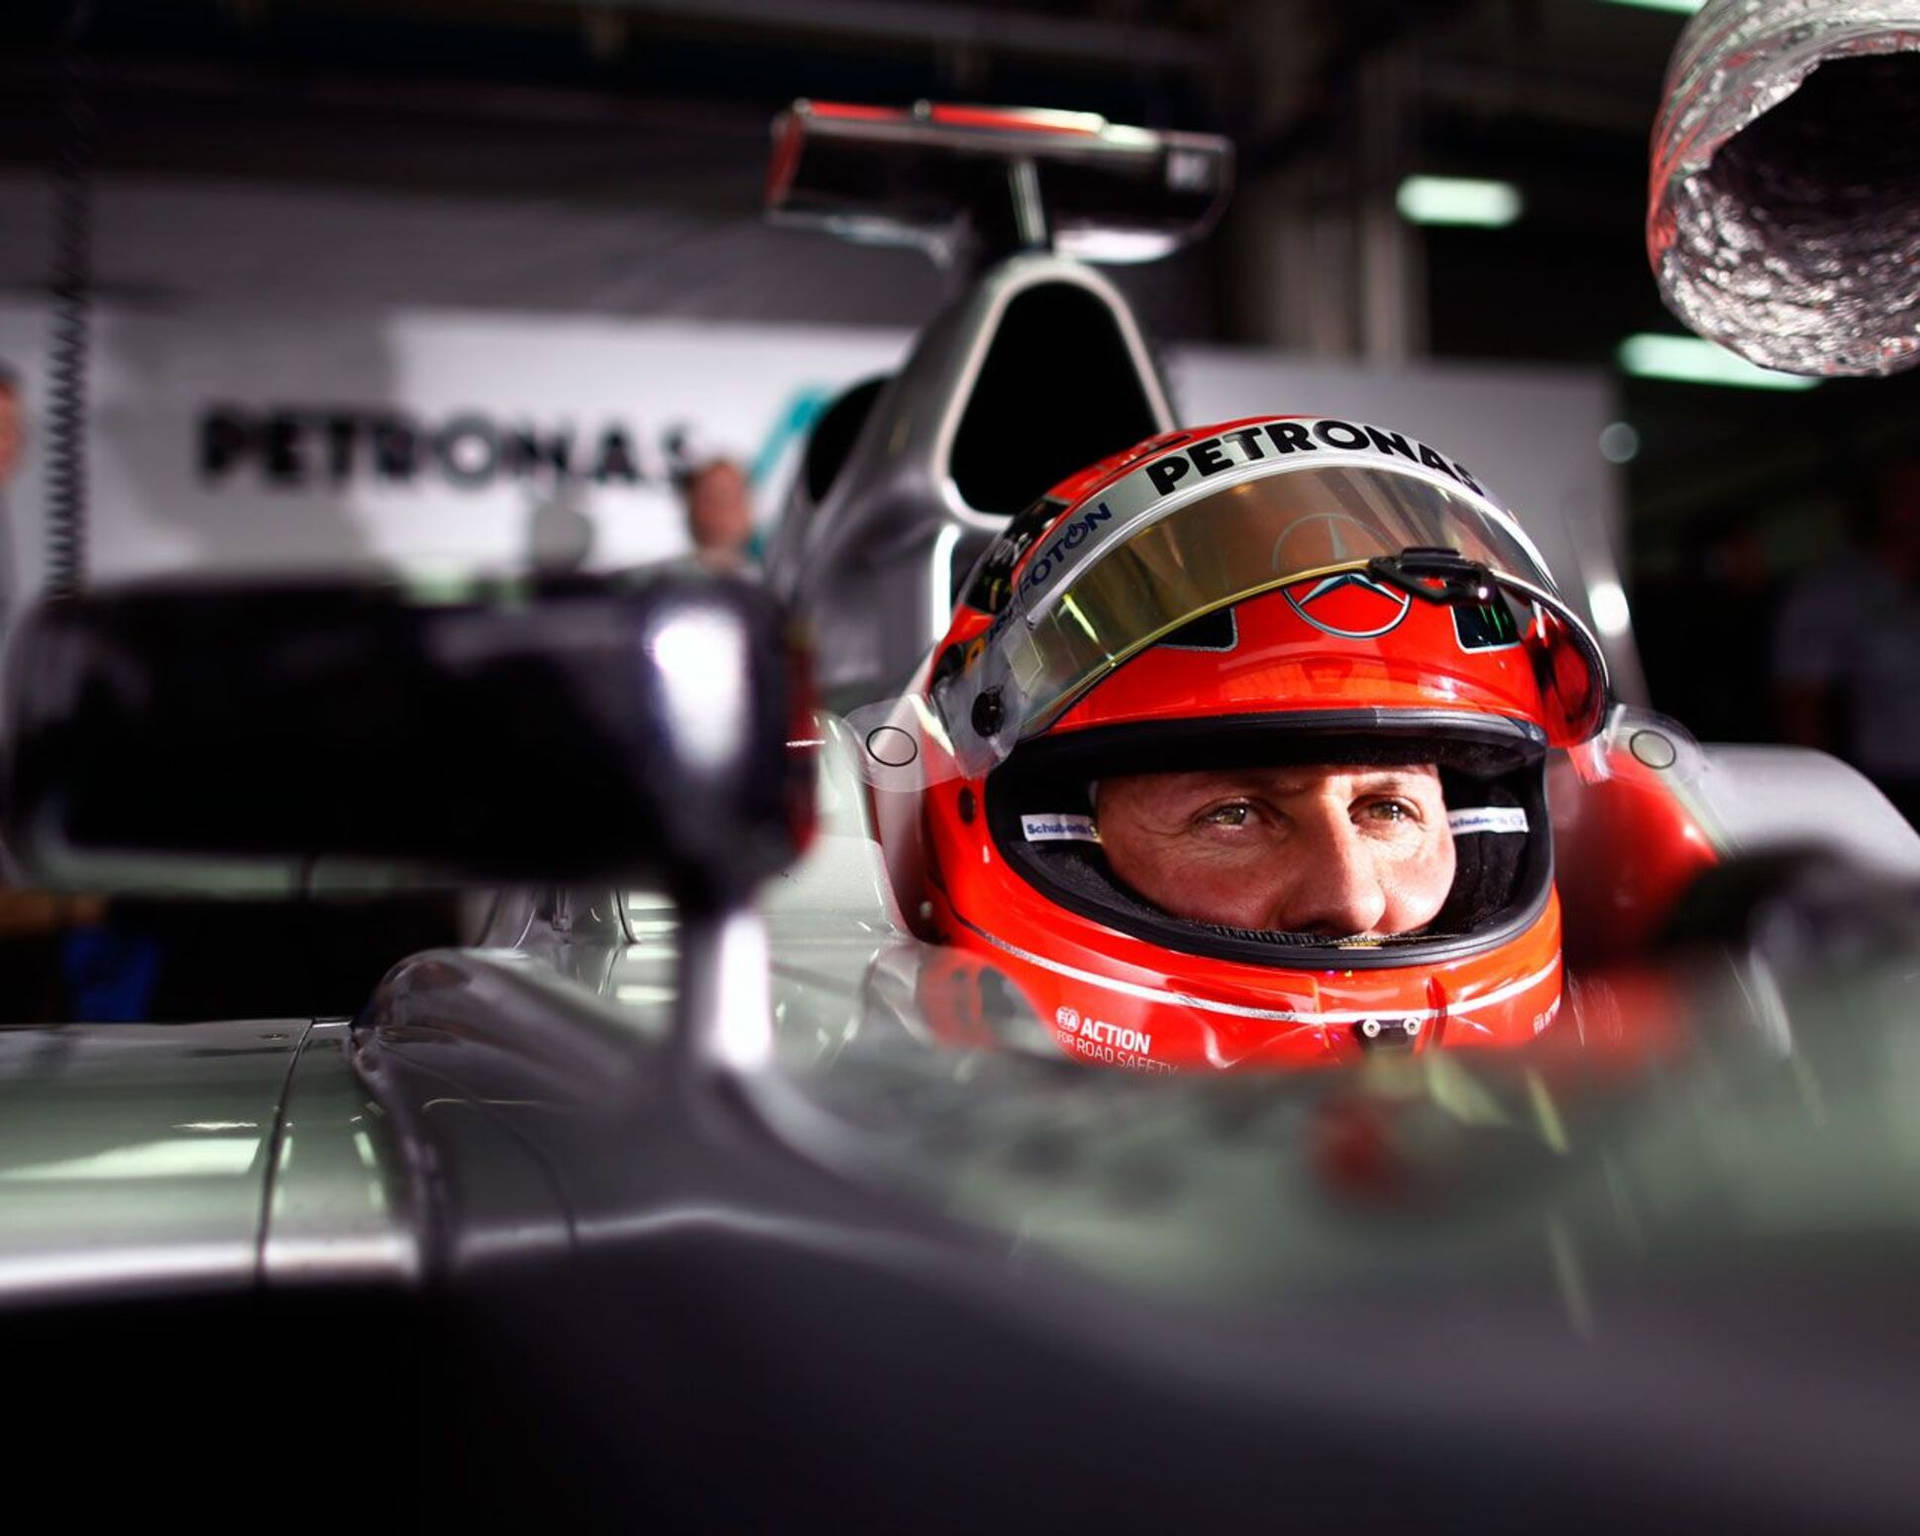 Focused Racer Michael Schumacher